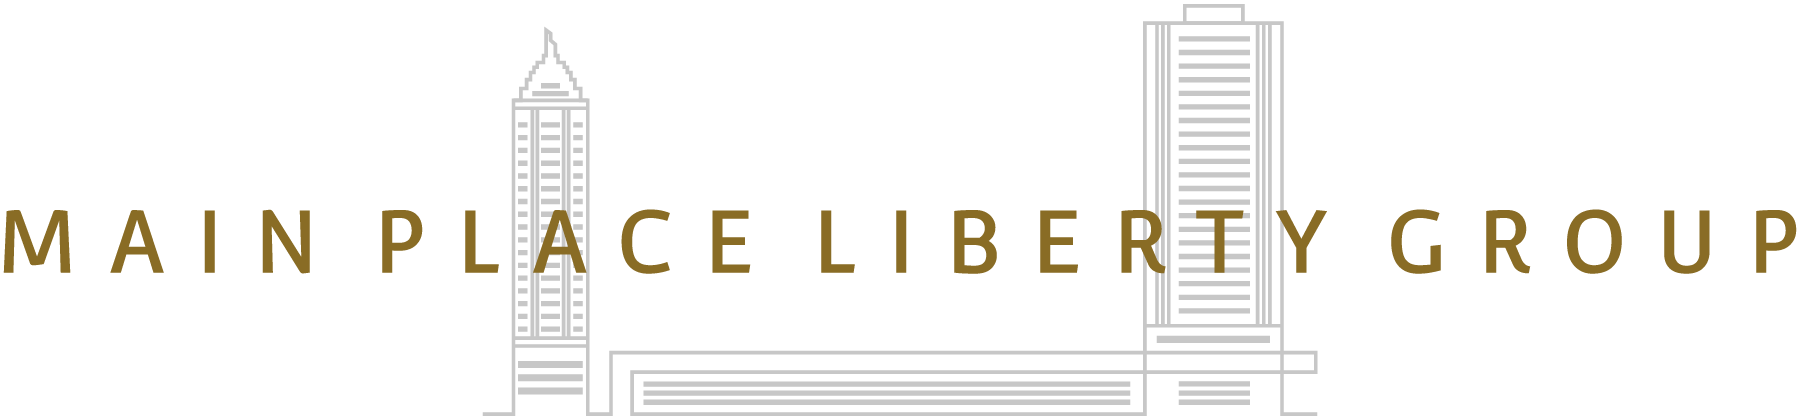 main place liberty group logo